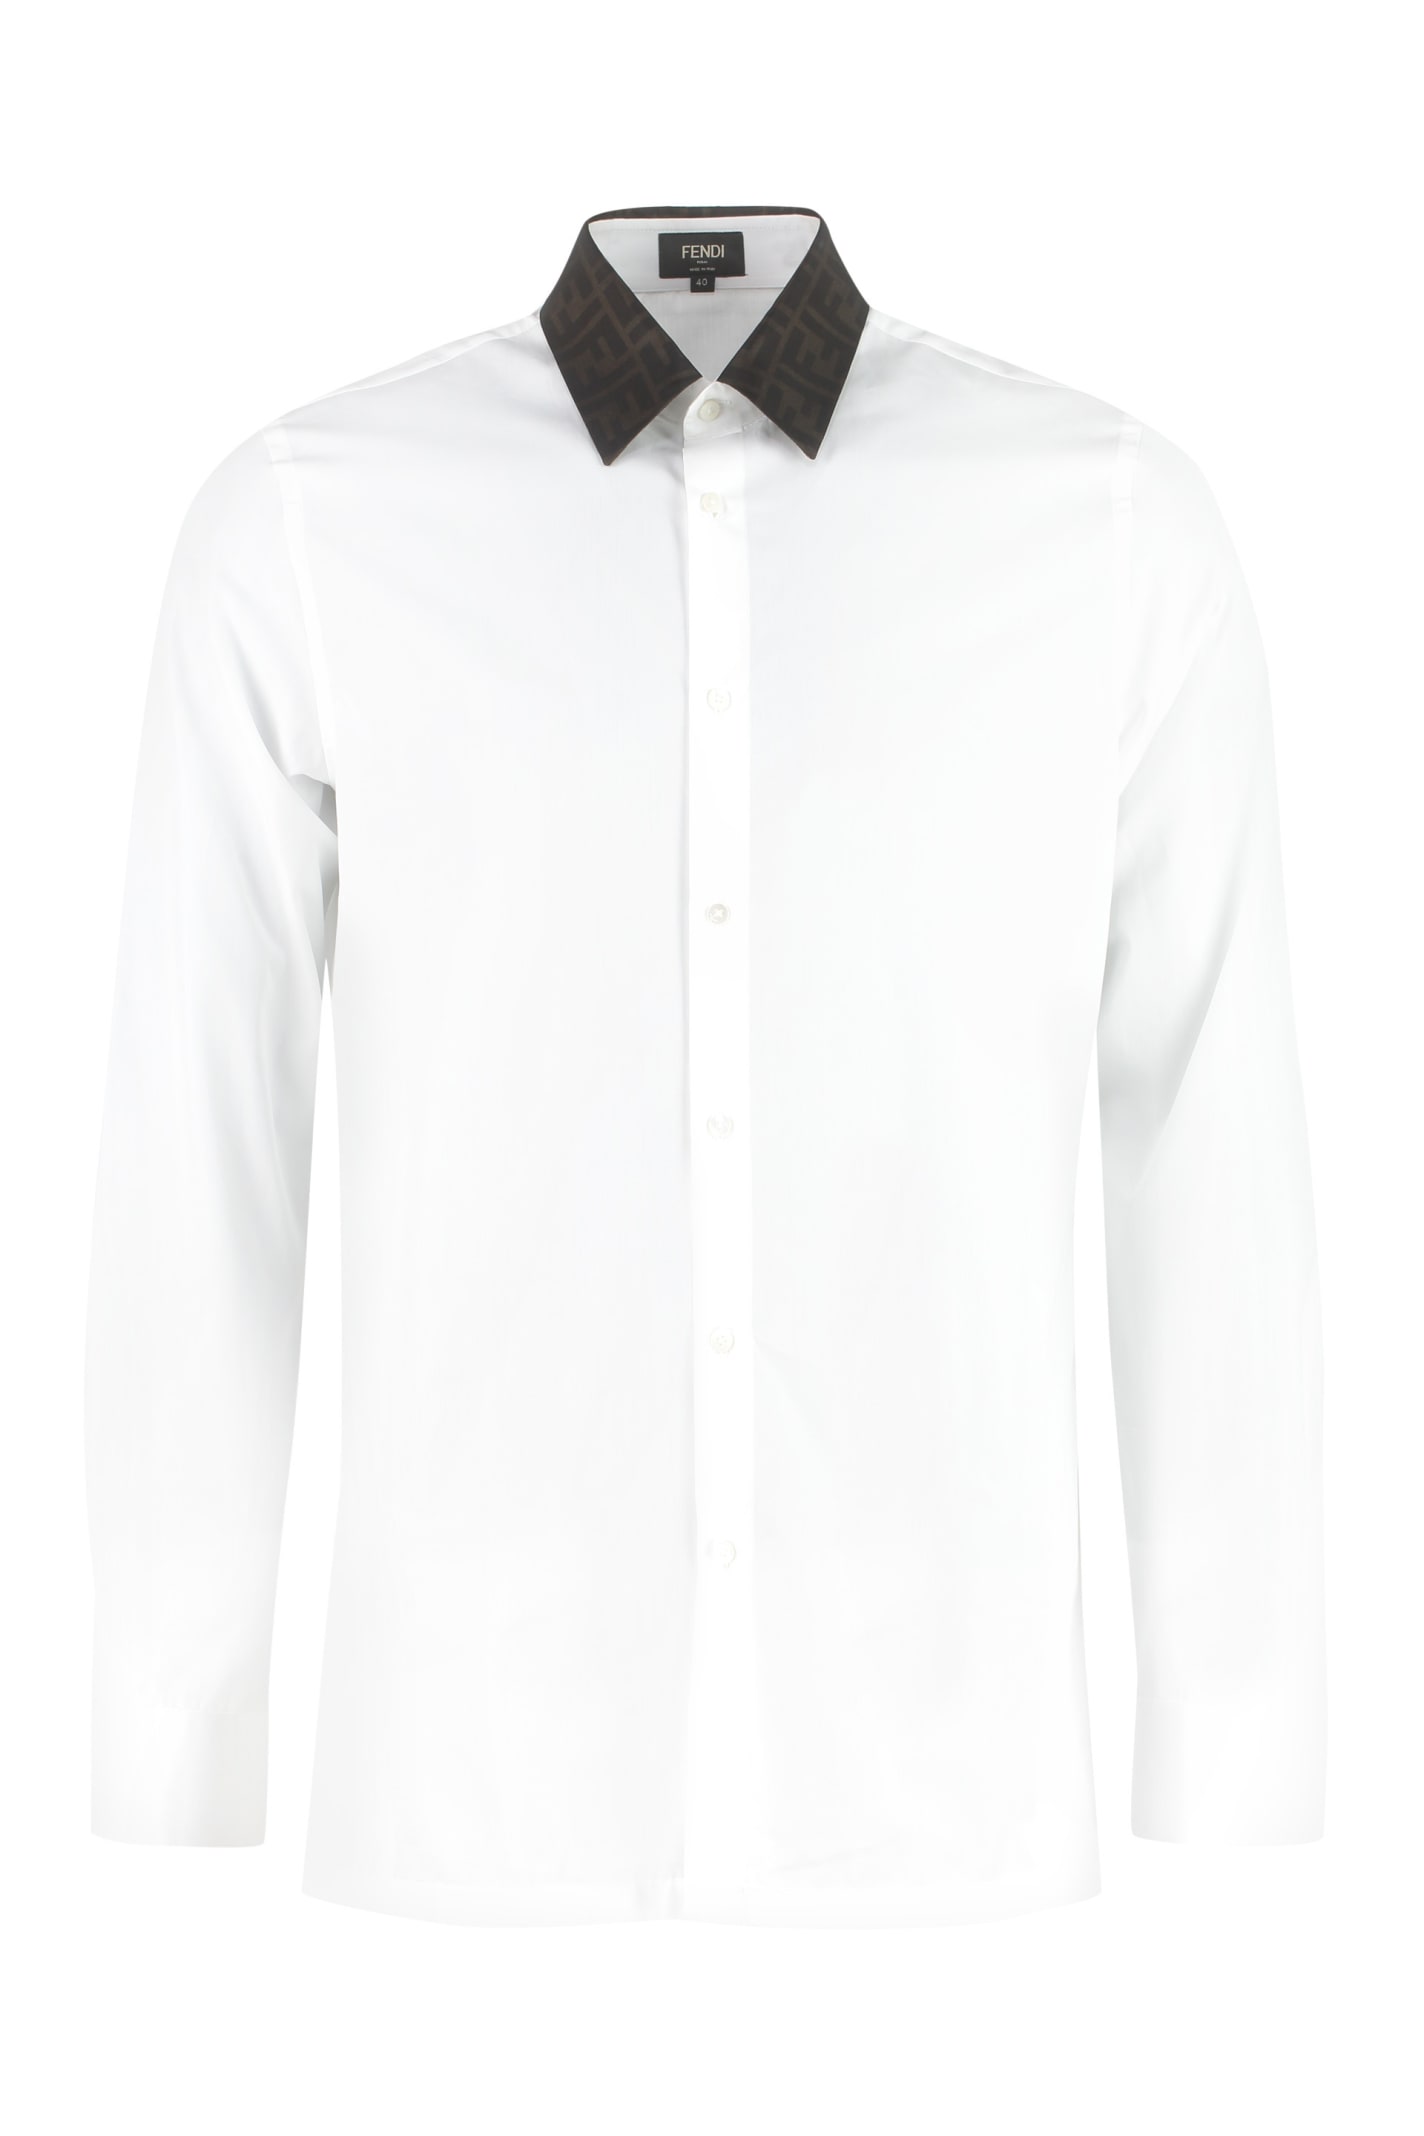 Fendi Classic Italian Collar Cotton Shirt